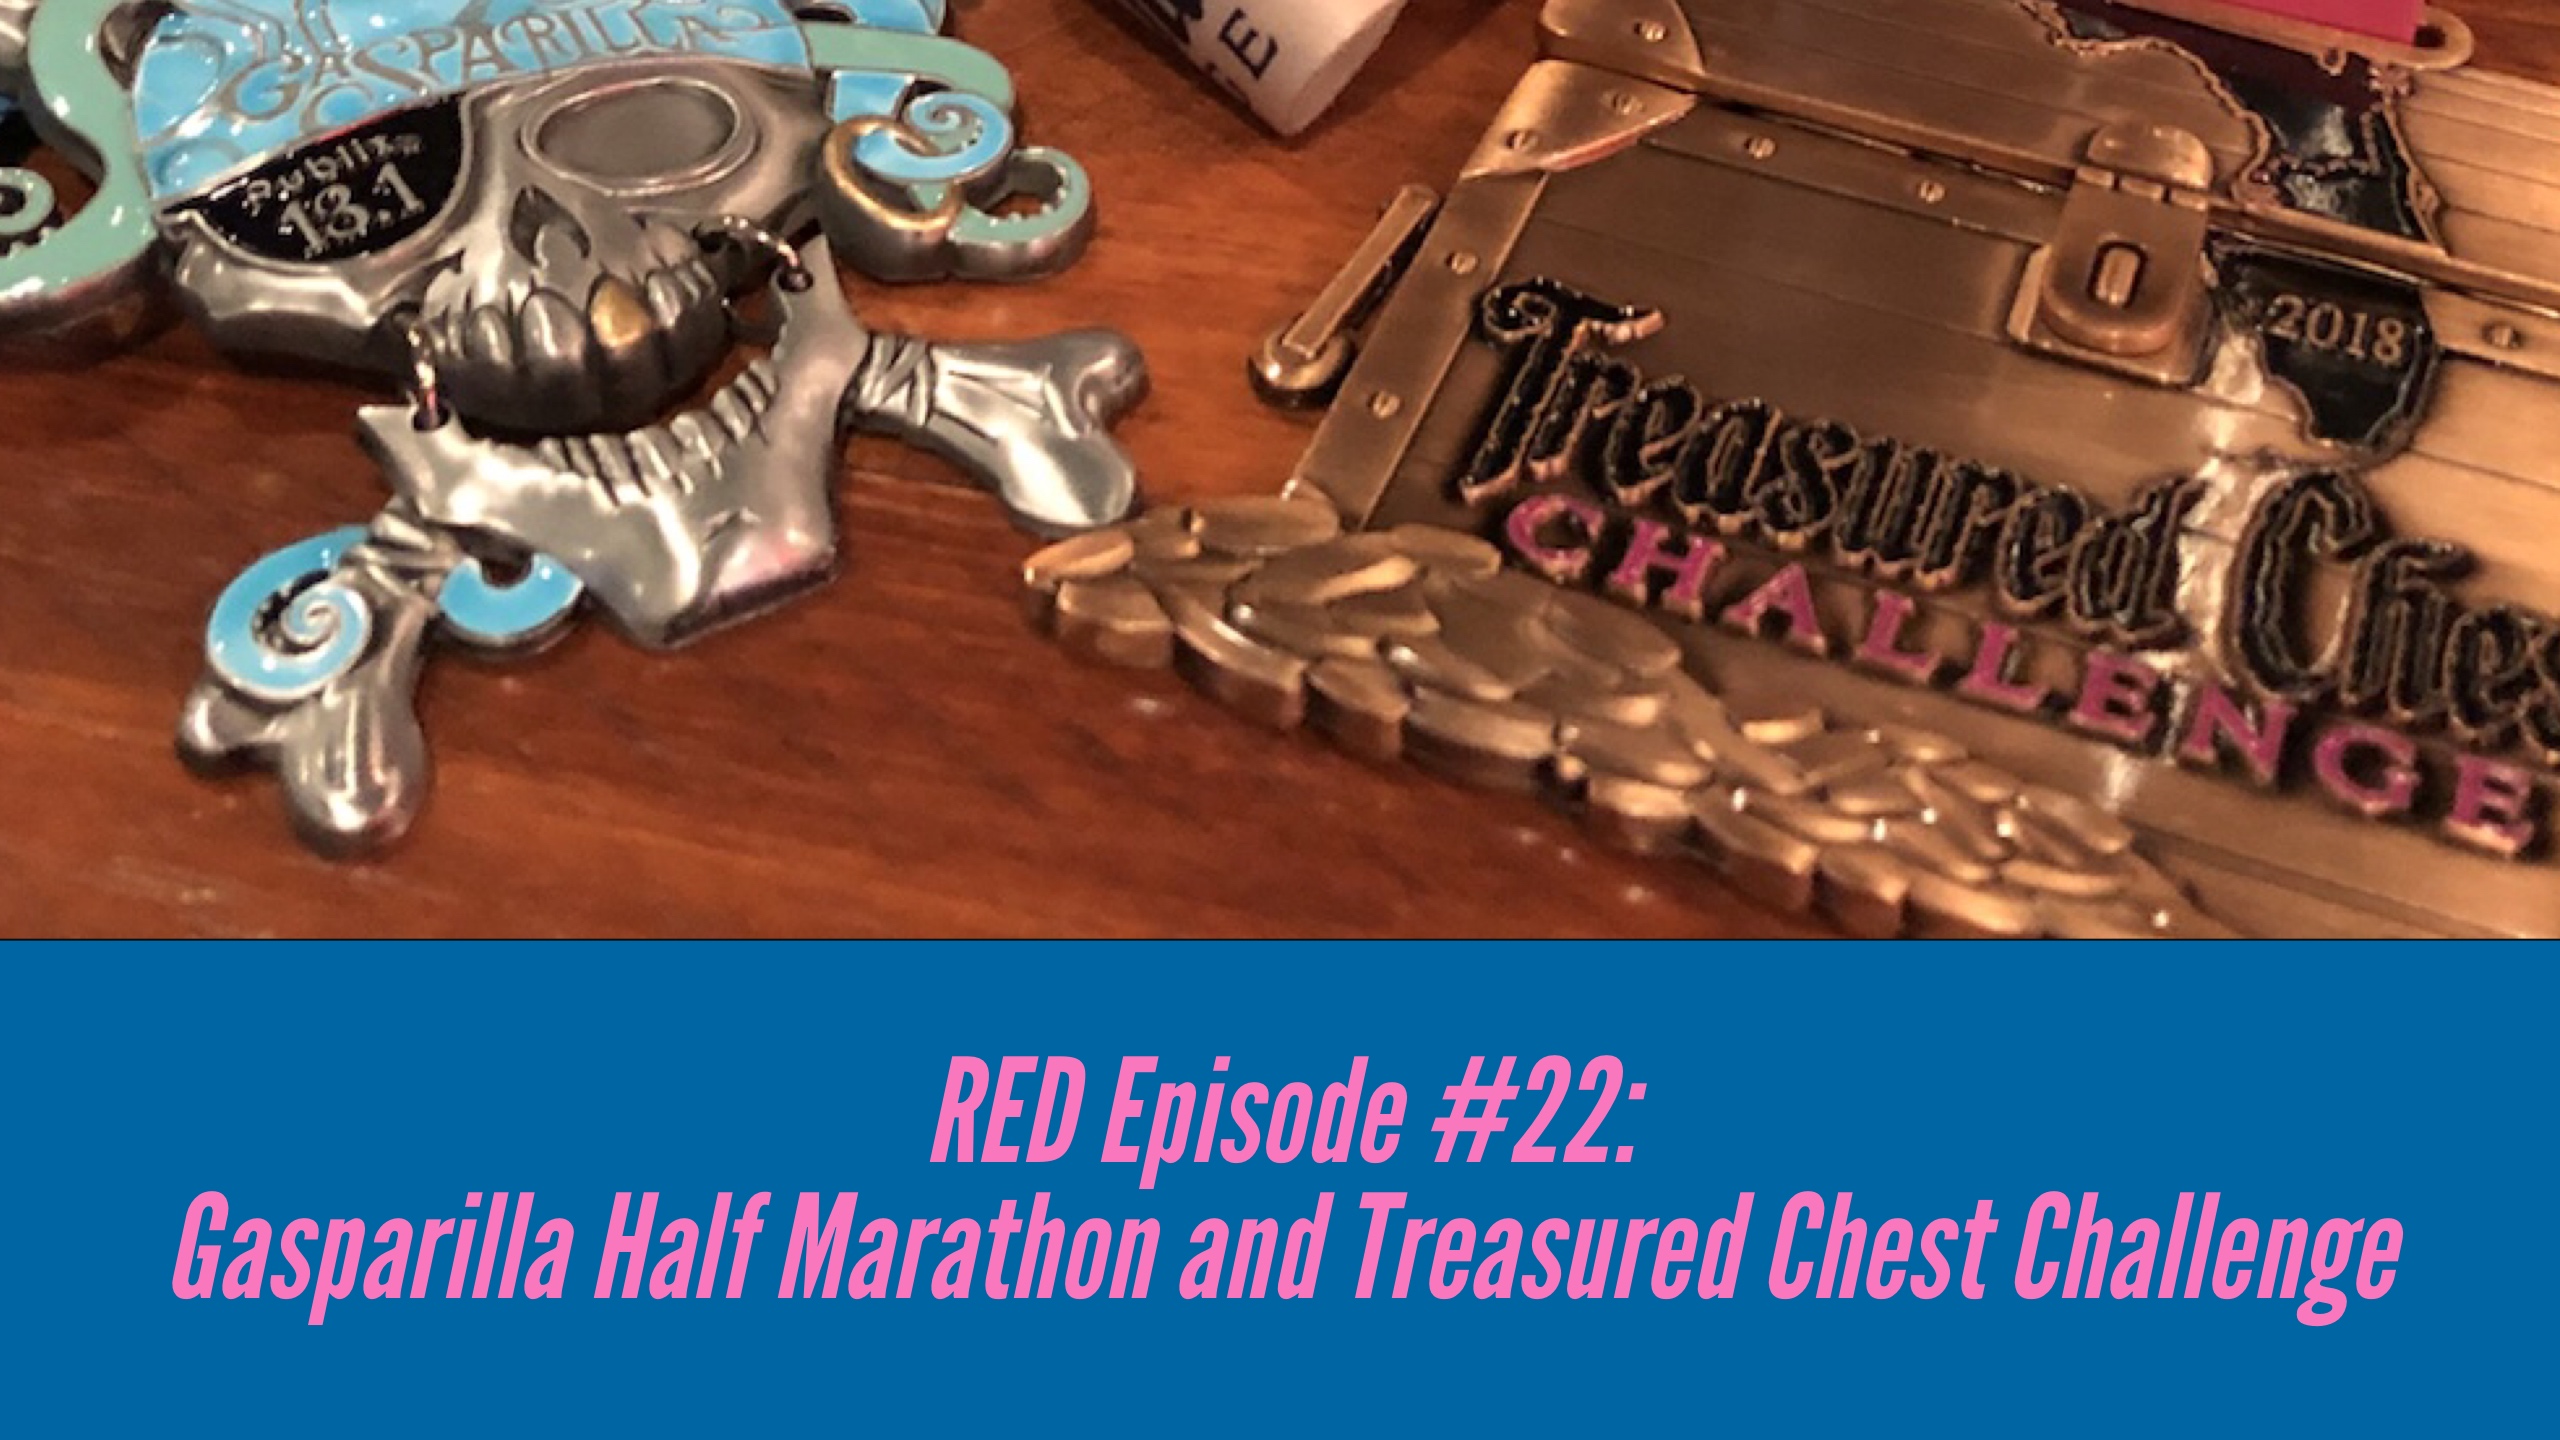 RED Episode #22:  Gasparilla Half Marathon and Treasured Chest Challenge